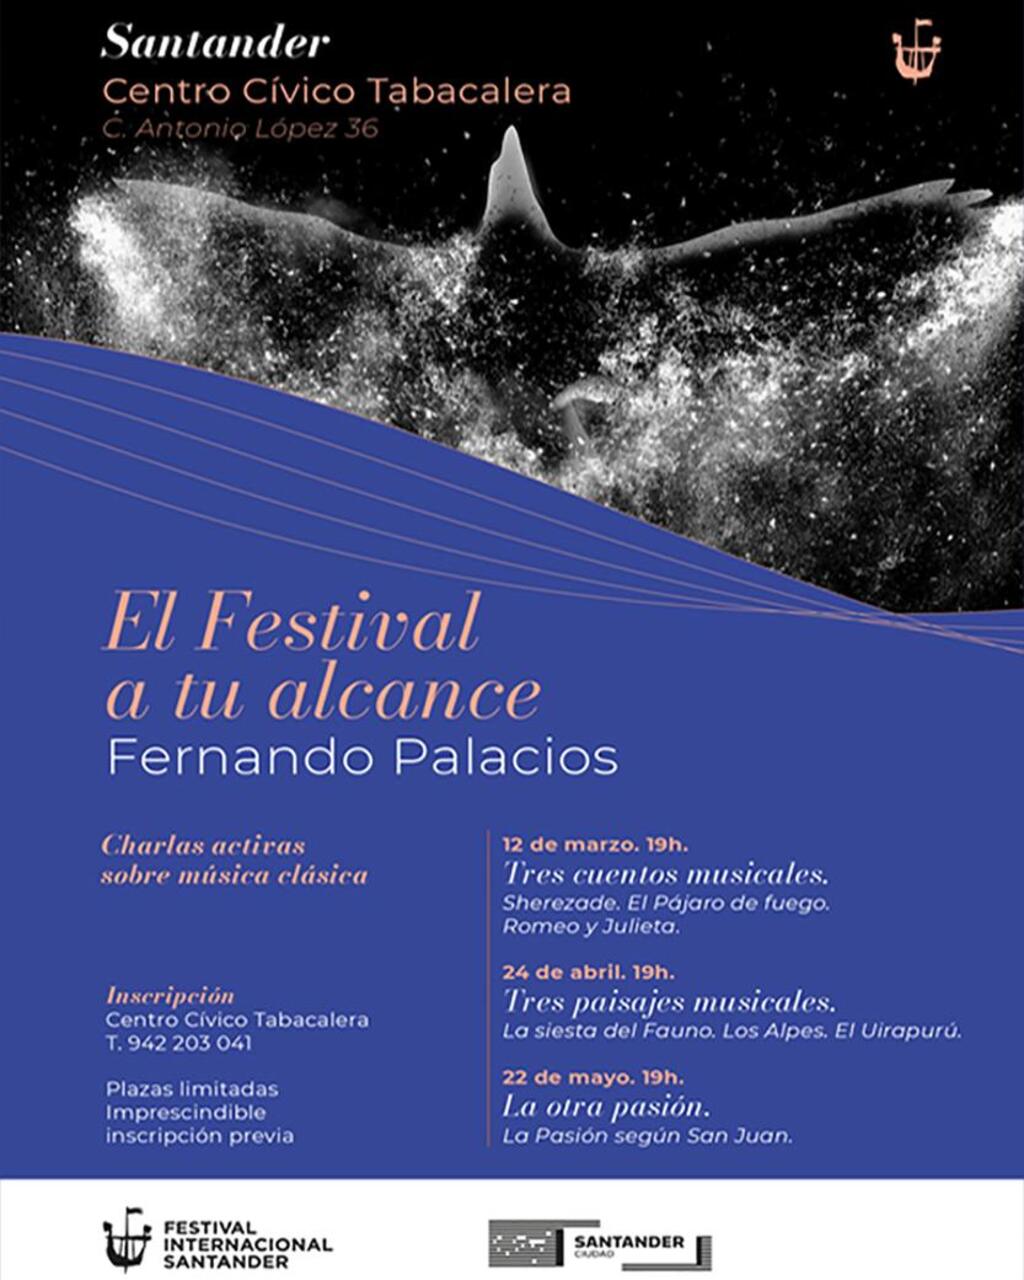 "La otra pasión", el Festival a tu alcance con Fernando Palacios